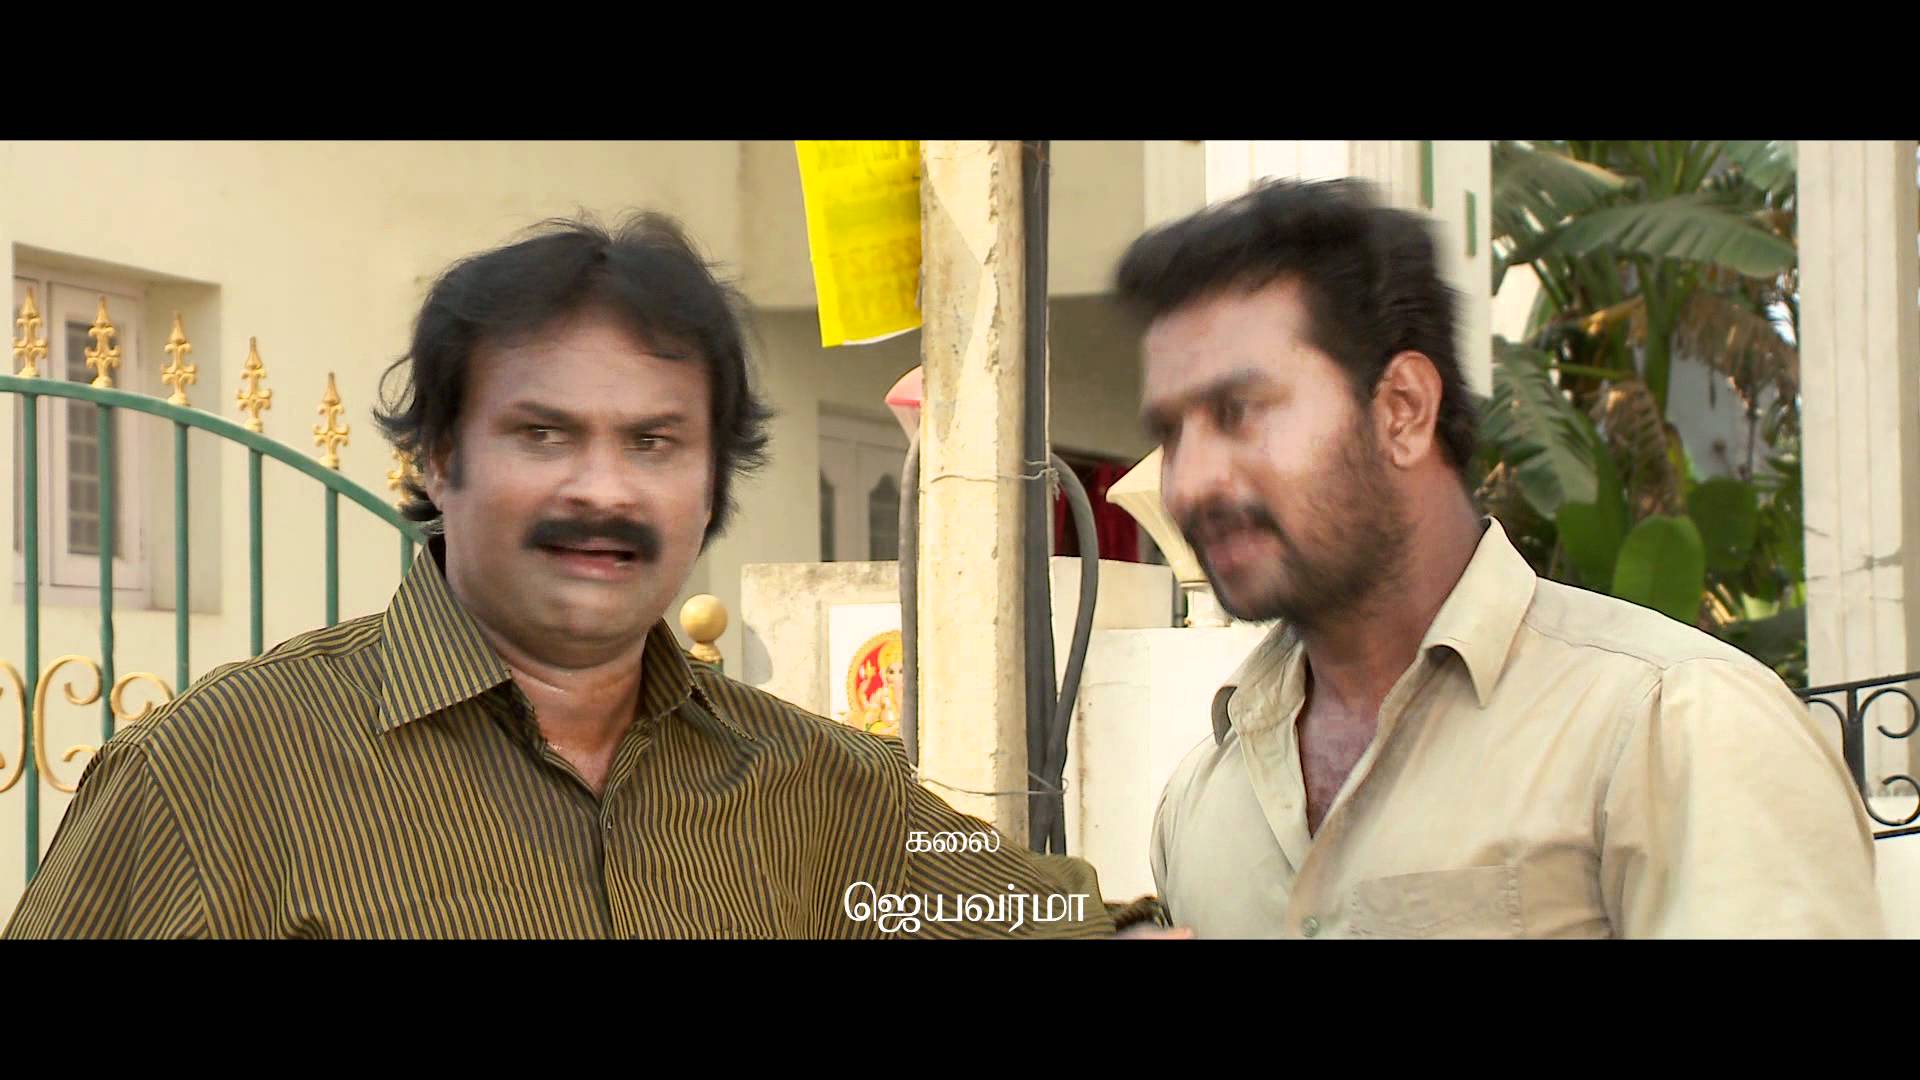 Surya in Aadhavan - Actors & People Background Wallpapers on Desktop Nexus  (Image 203277)